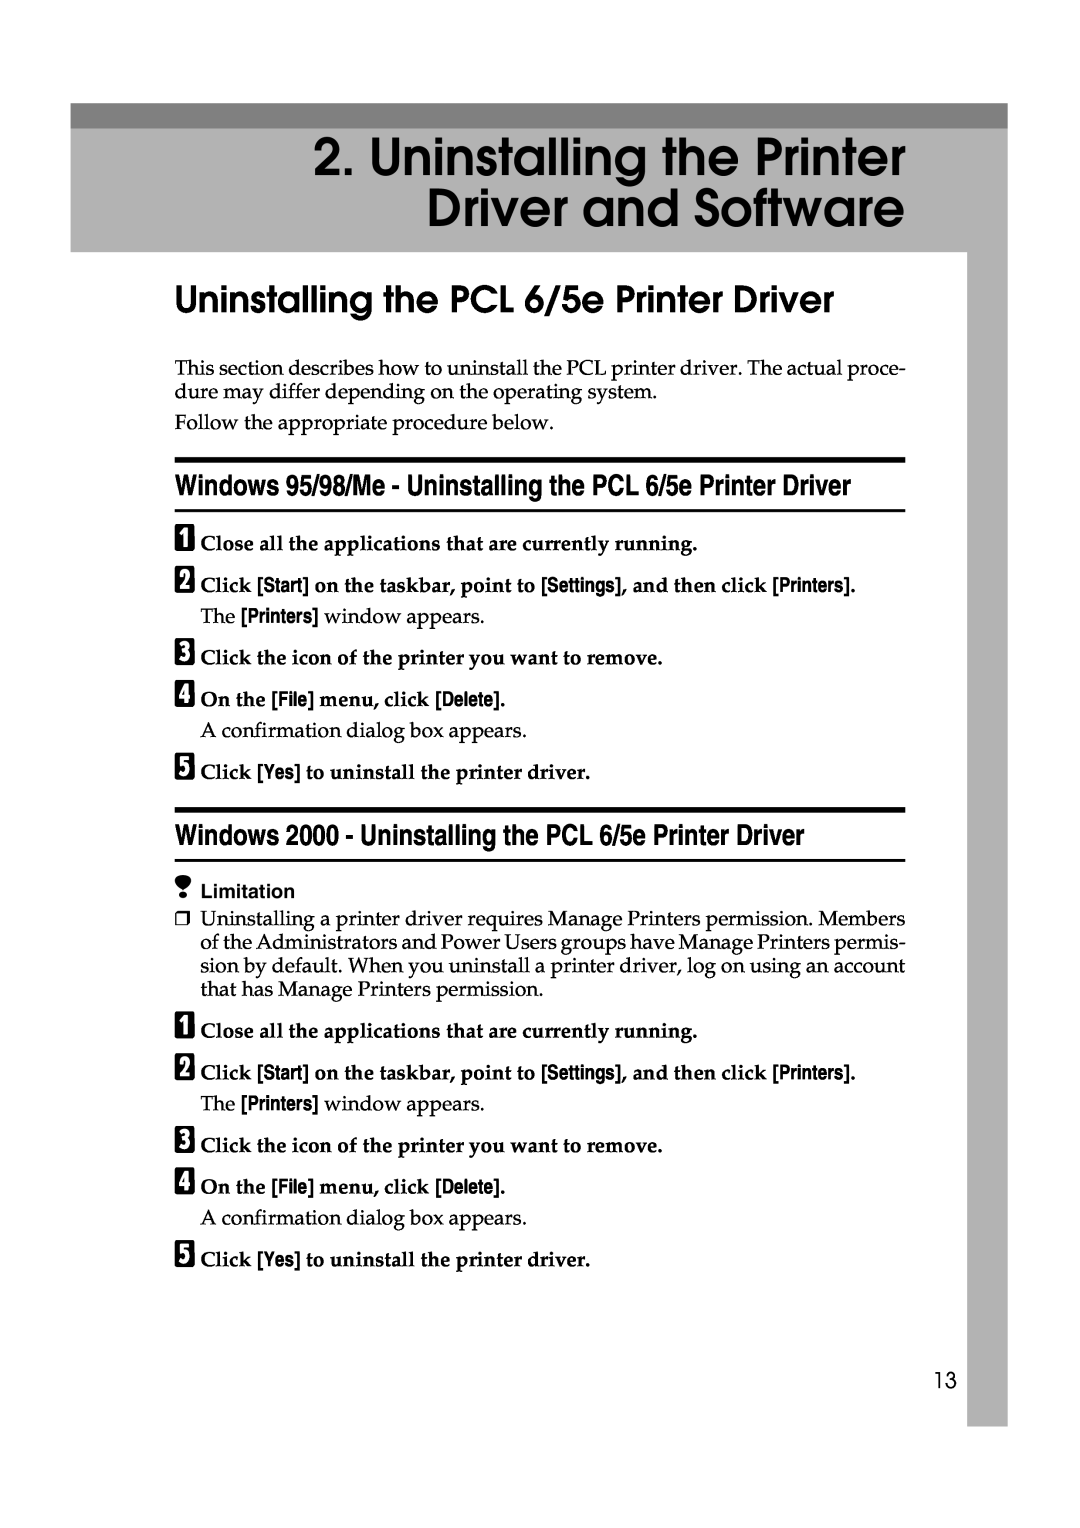 Lanier AP3200 manual Uninstalling the Printer Driver and Software, Uninstalling the PCL 6/5e Printer Driver 